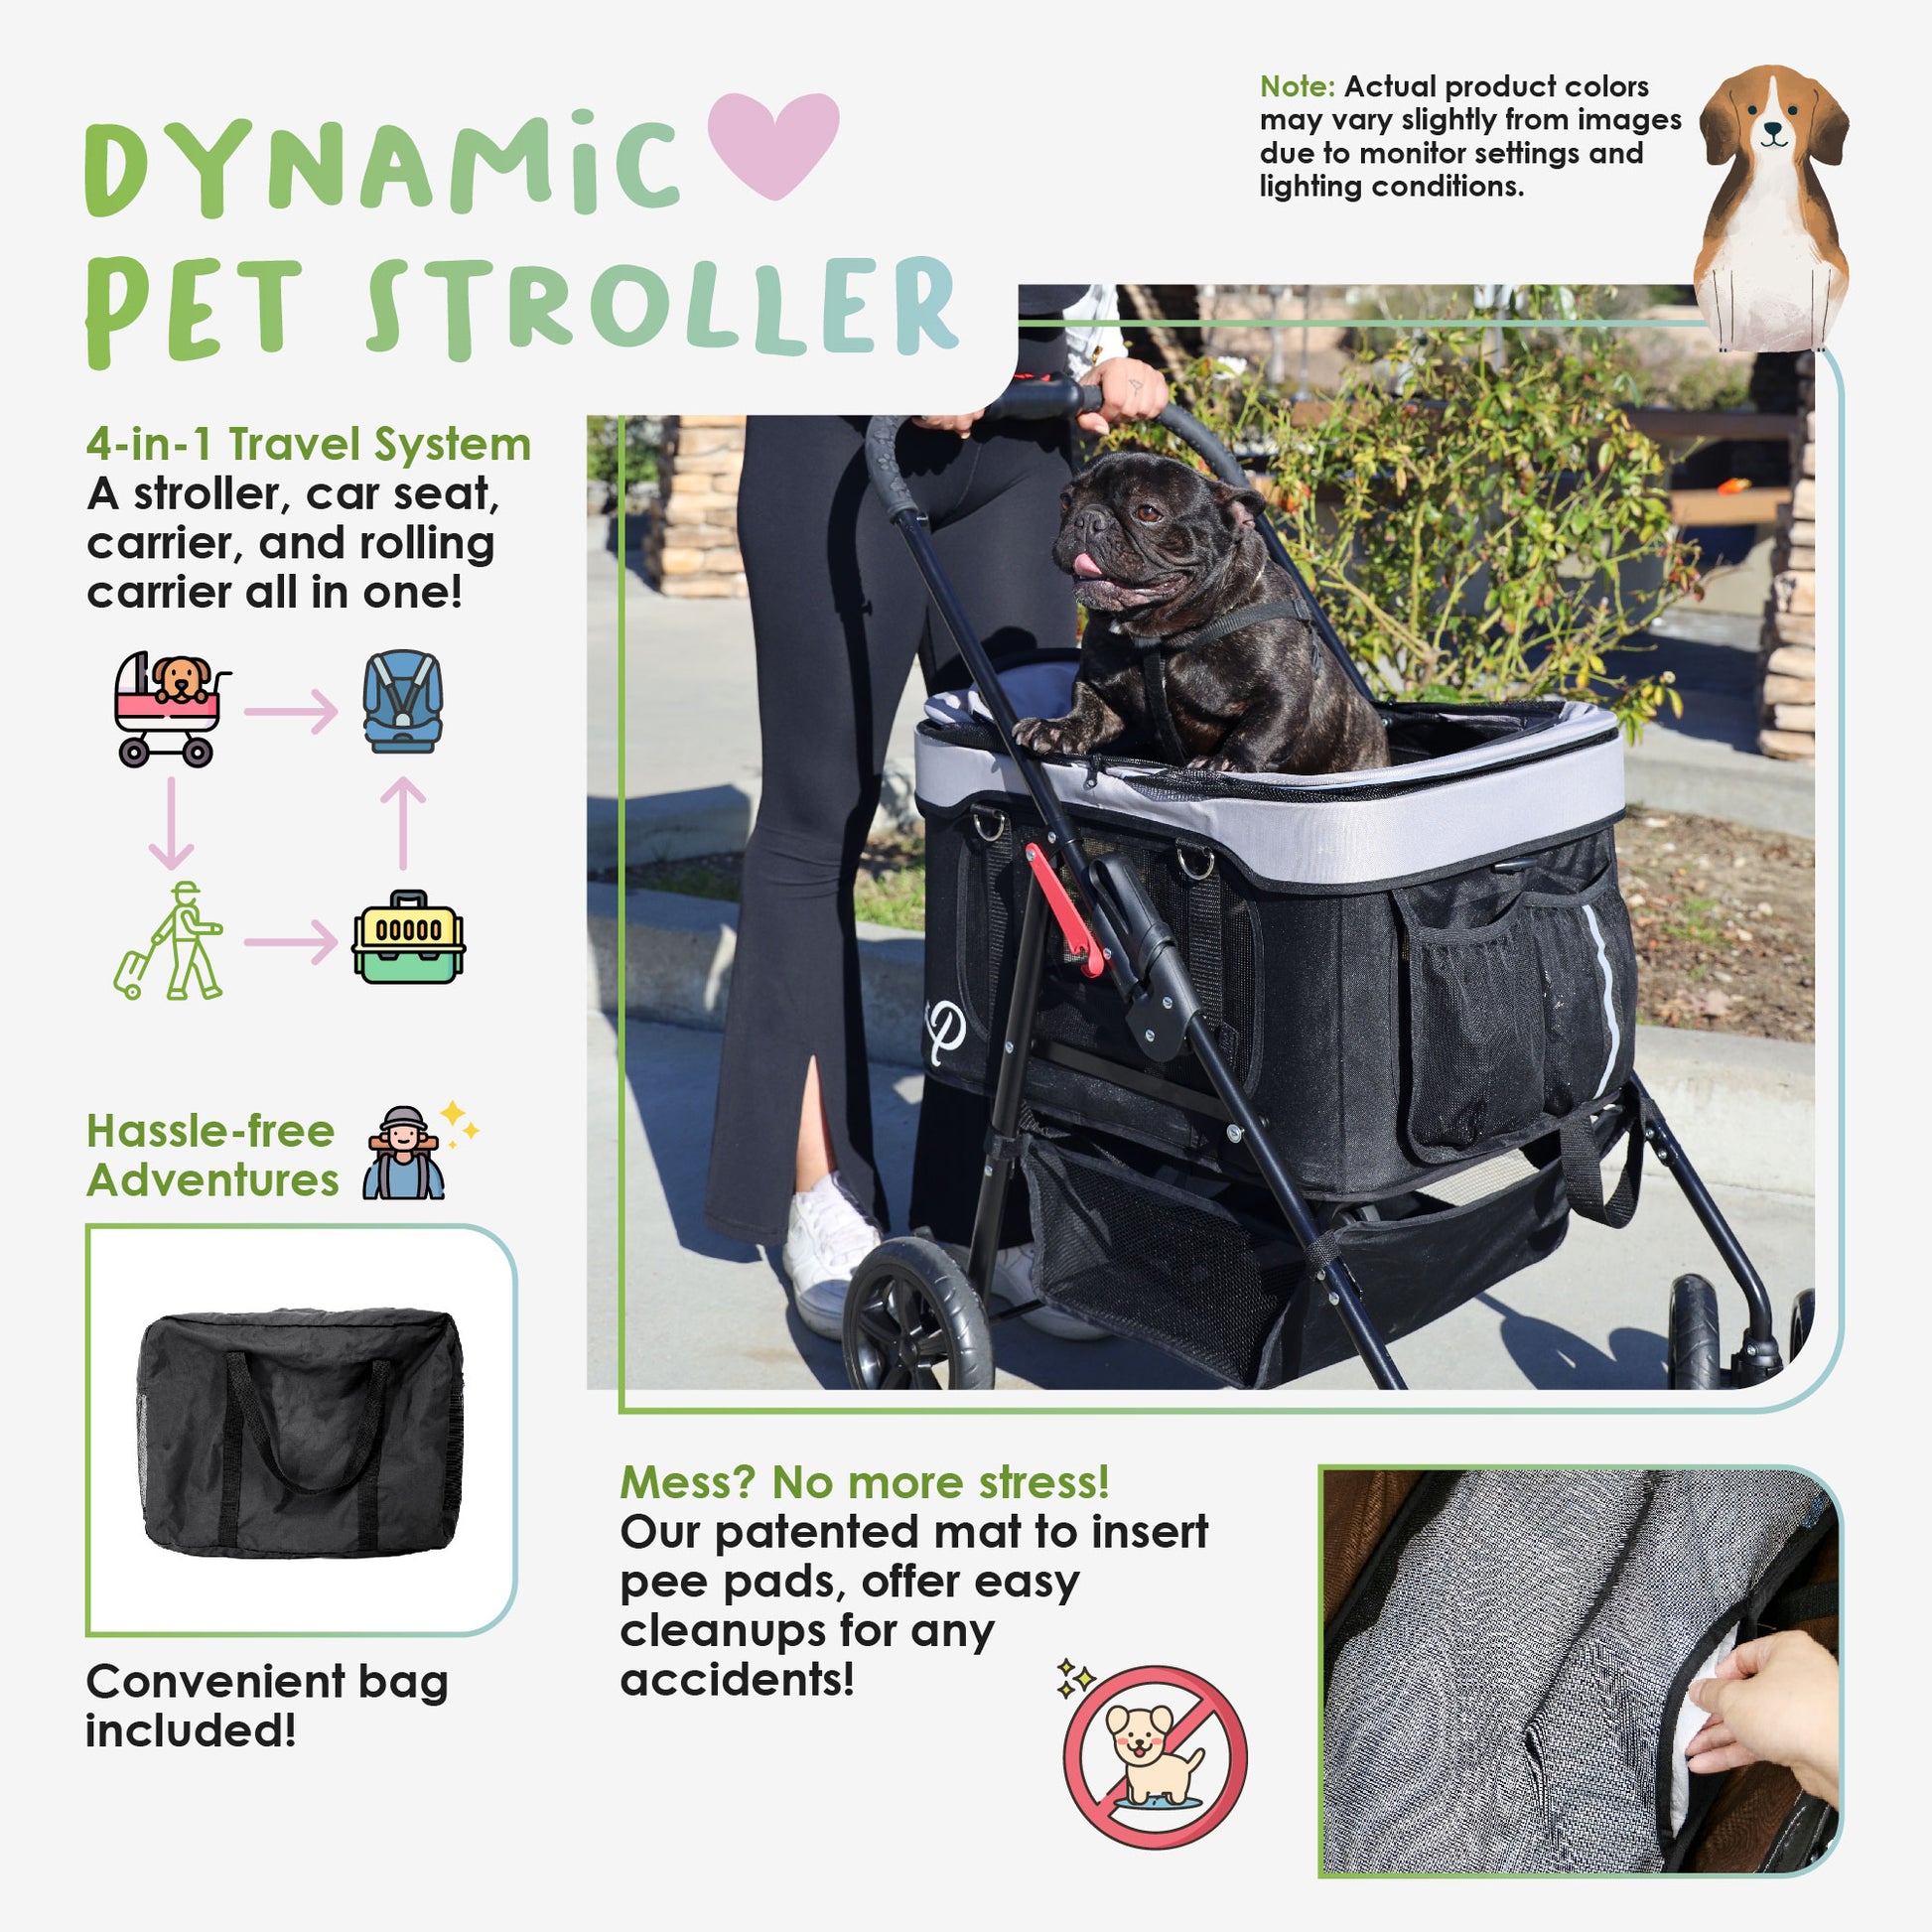 about petique's dynamic pet stroller